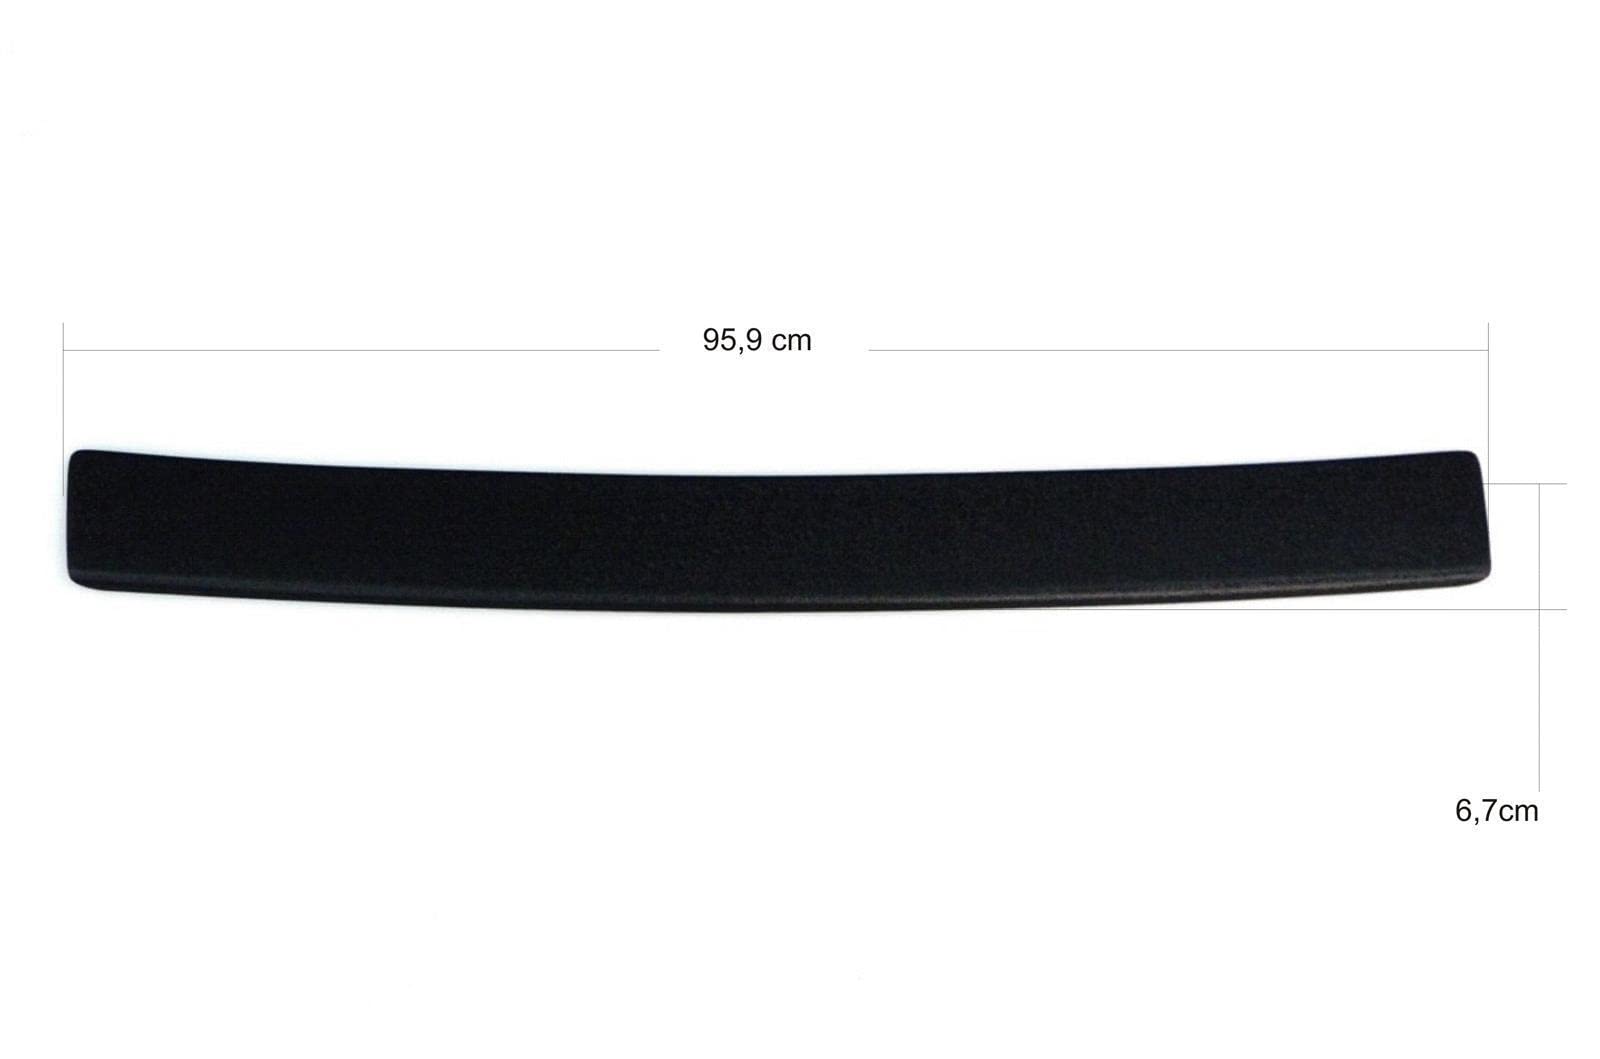 OmniPower® Ladekantenschutz schwarz passend für Mercedes A-Klasse Schrägheck Typ:W176 2012-2018 auch für AMG-Line OmniPower® Ladekantenschutz Farbe: schwarz